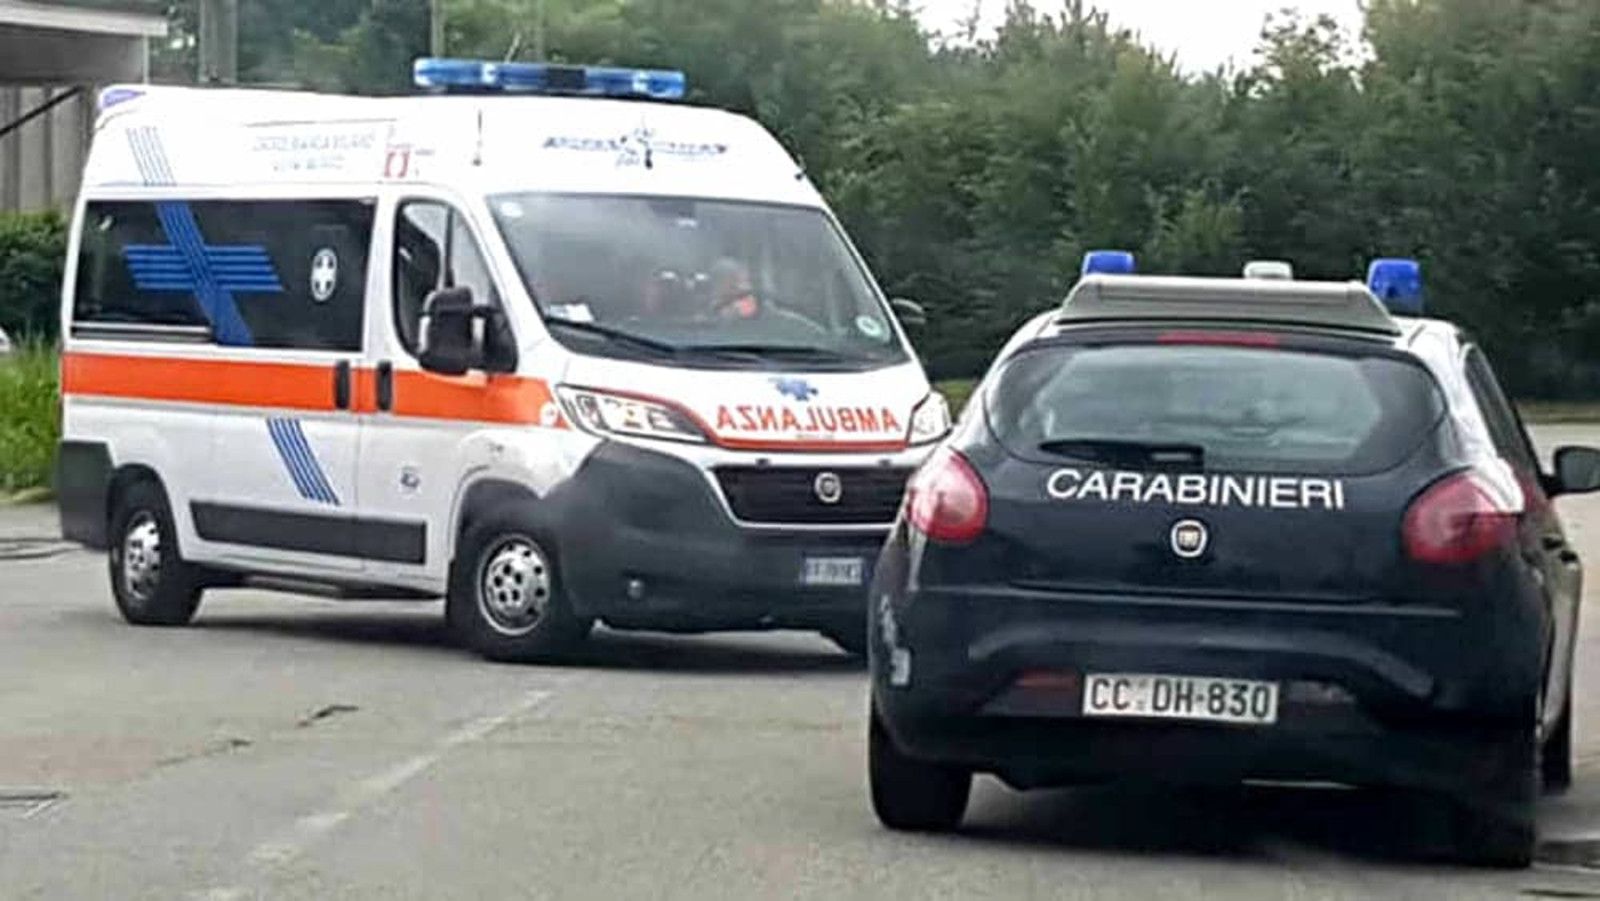 Carabinieri ambulanza per intervento a Ladispoli dove un uomo si è impiccato dopo essere finito ai domiciliari